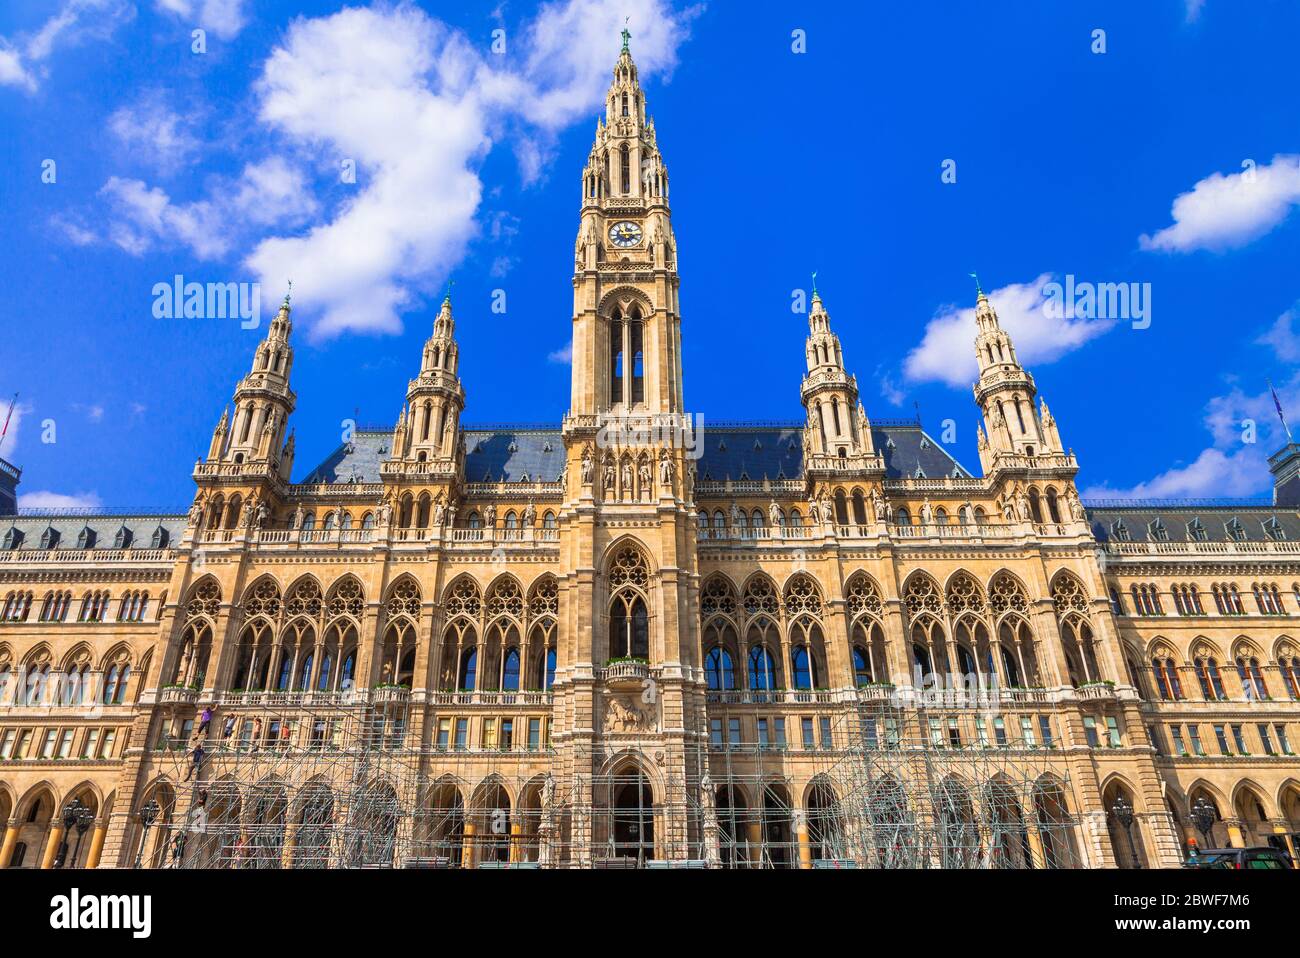 Capitale de Vienne, architecture gothique impressionnante de l'hôtel de ville. Symbole de Vienne. Voyage et sites touristiques de l'Autriche Banque D'Images